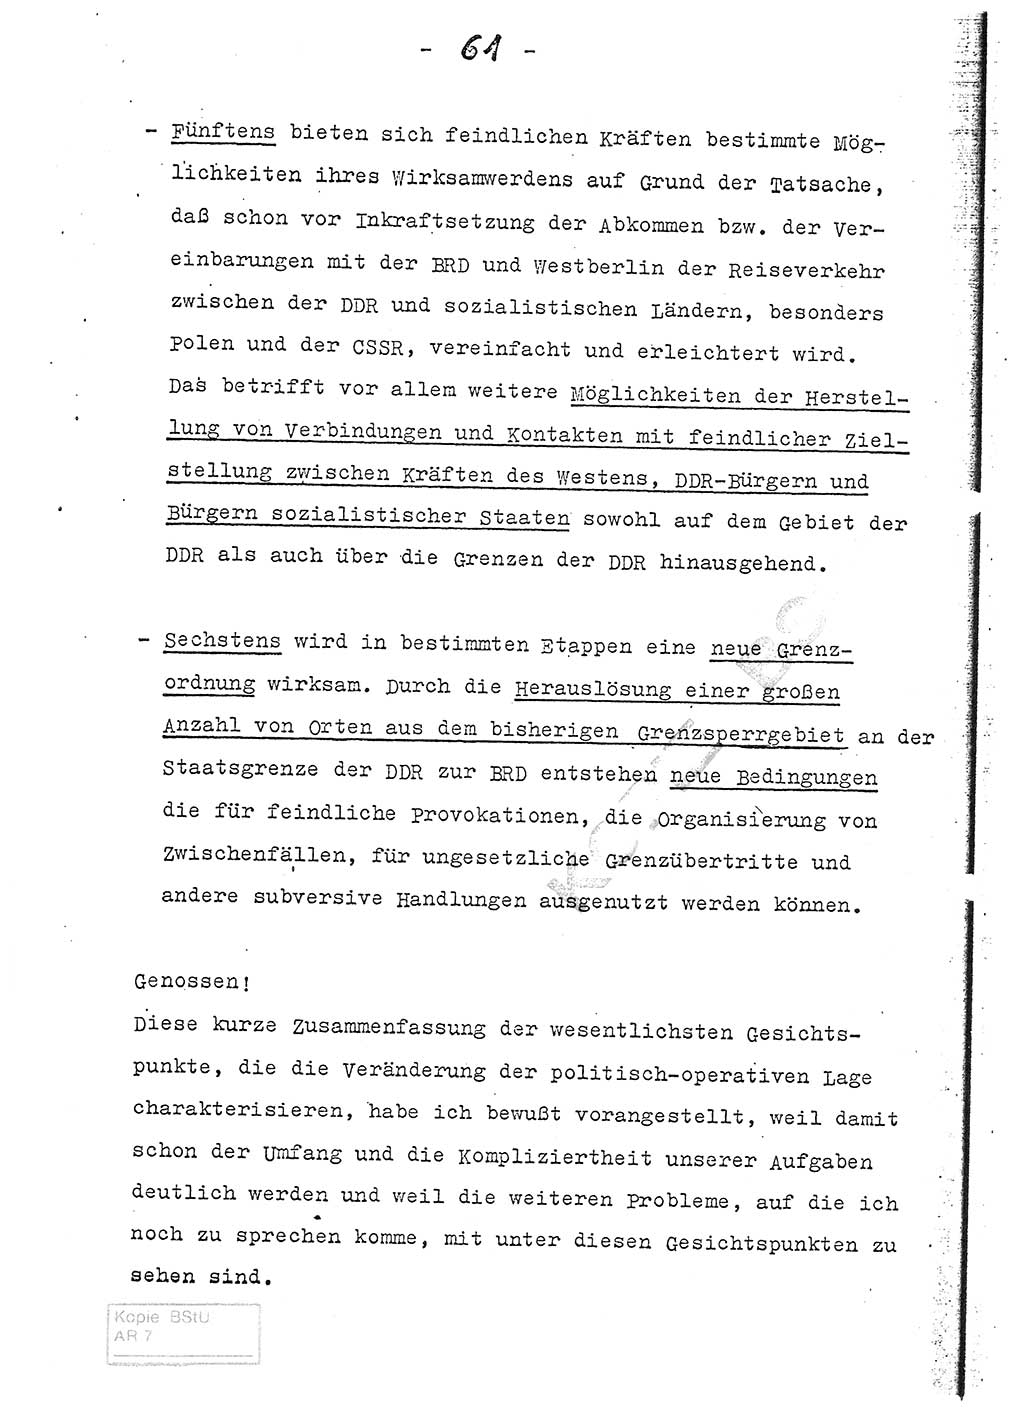 Referat (Entwurf) des Genossen Minister (Generaloberst Erich Mielke) auf der Dienstkonferenz 1972, Ministerium für Staatssicherheit (MfS) [Deutsche Demokratische Republik (DDR)], Der Minister, Geheime Verschlußsache (GVS) 008-150/72, Berlin 25.2.1972, Seite 61 (Ref. Entw. DK MfS DDR Min. GVS 008-150/72 1972, S. 61)